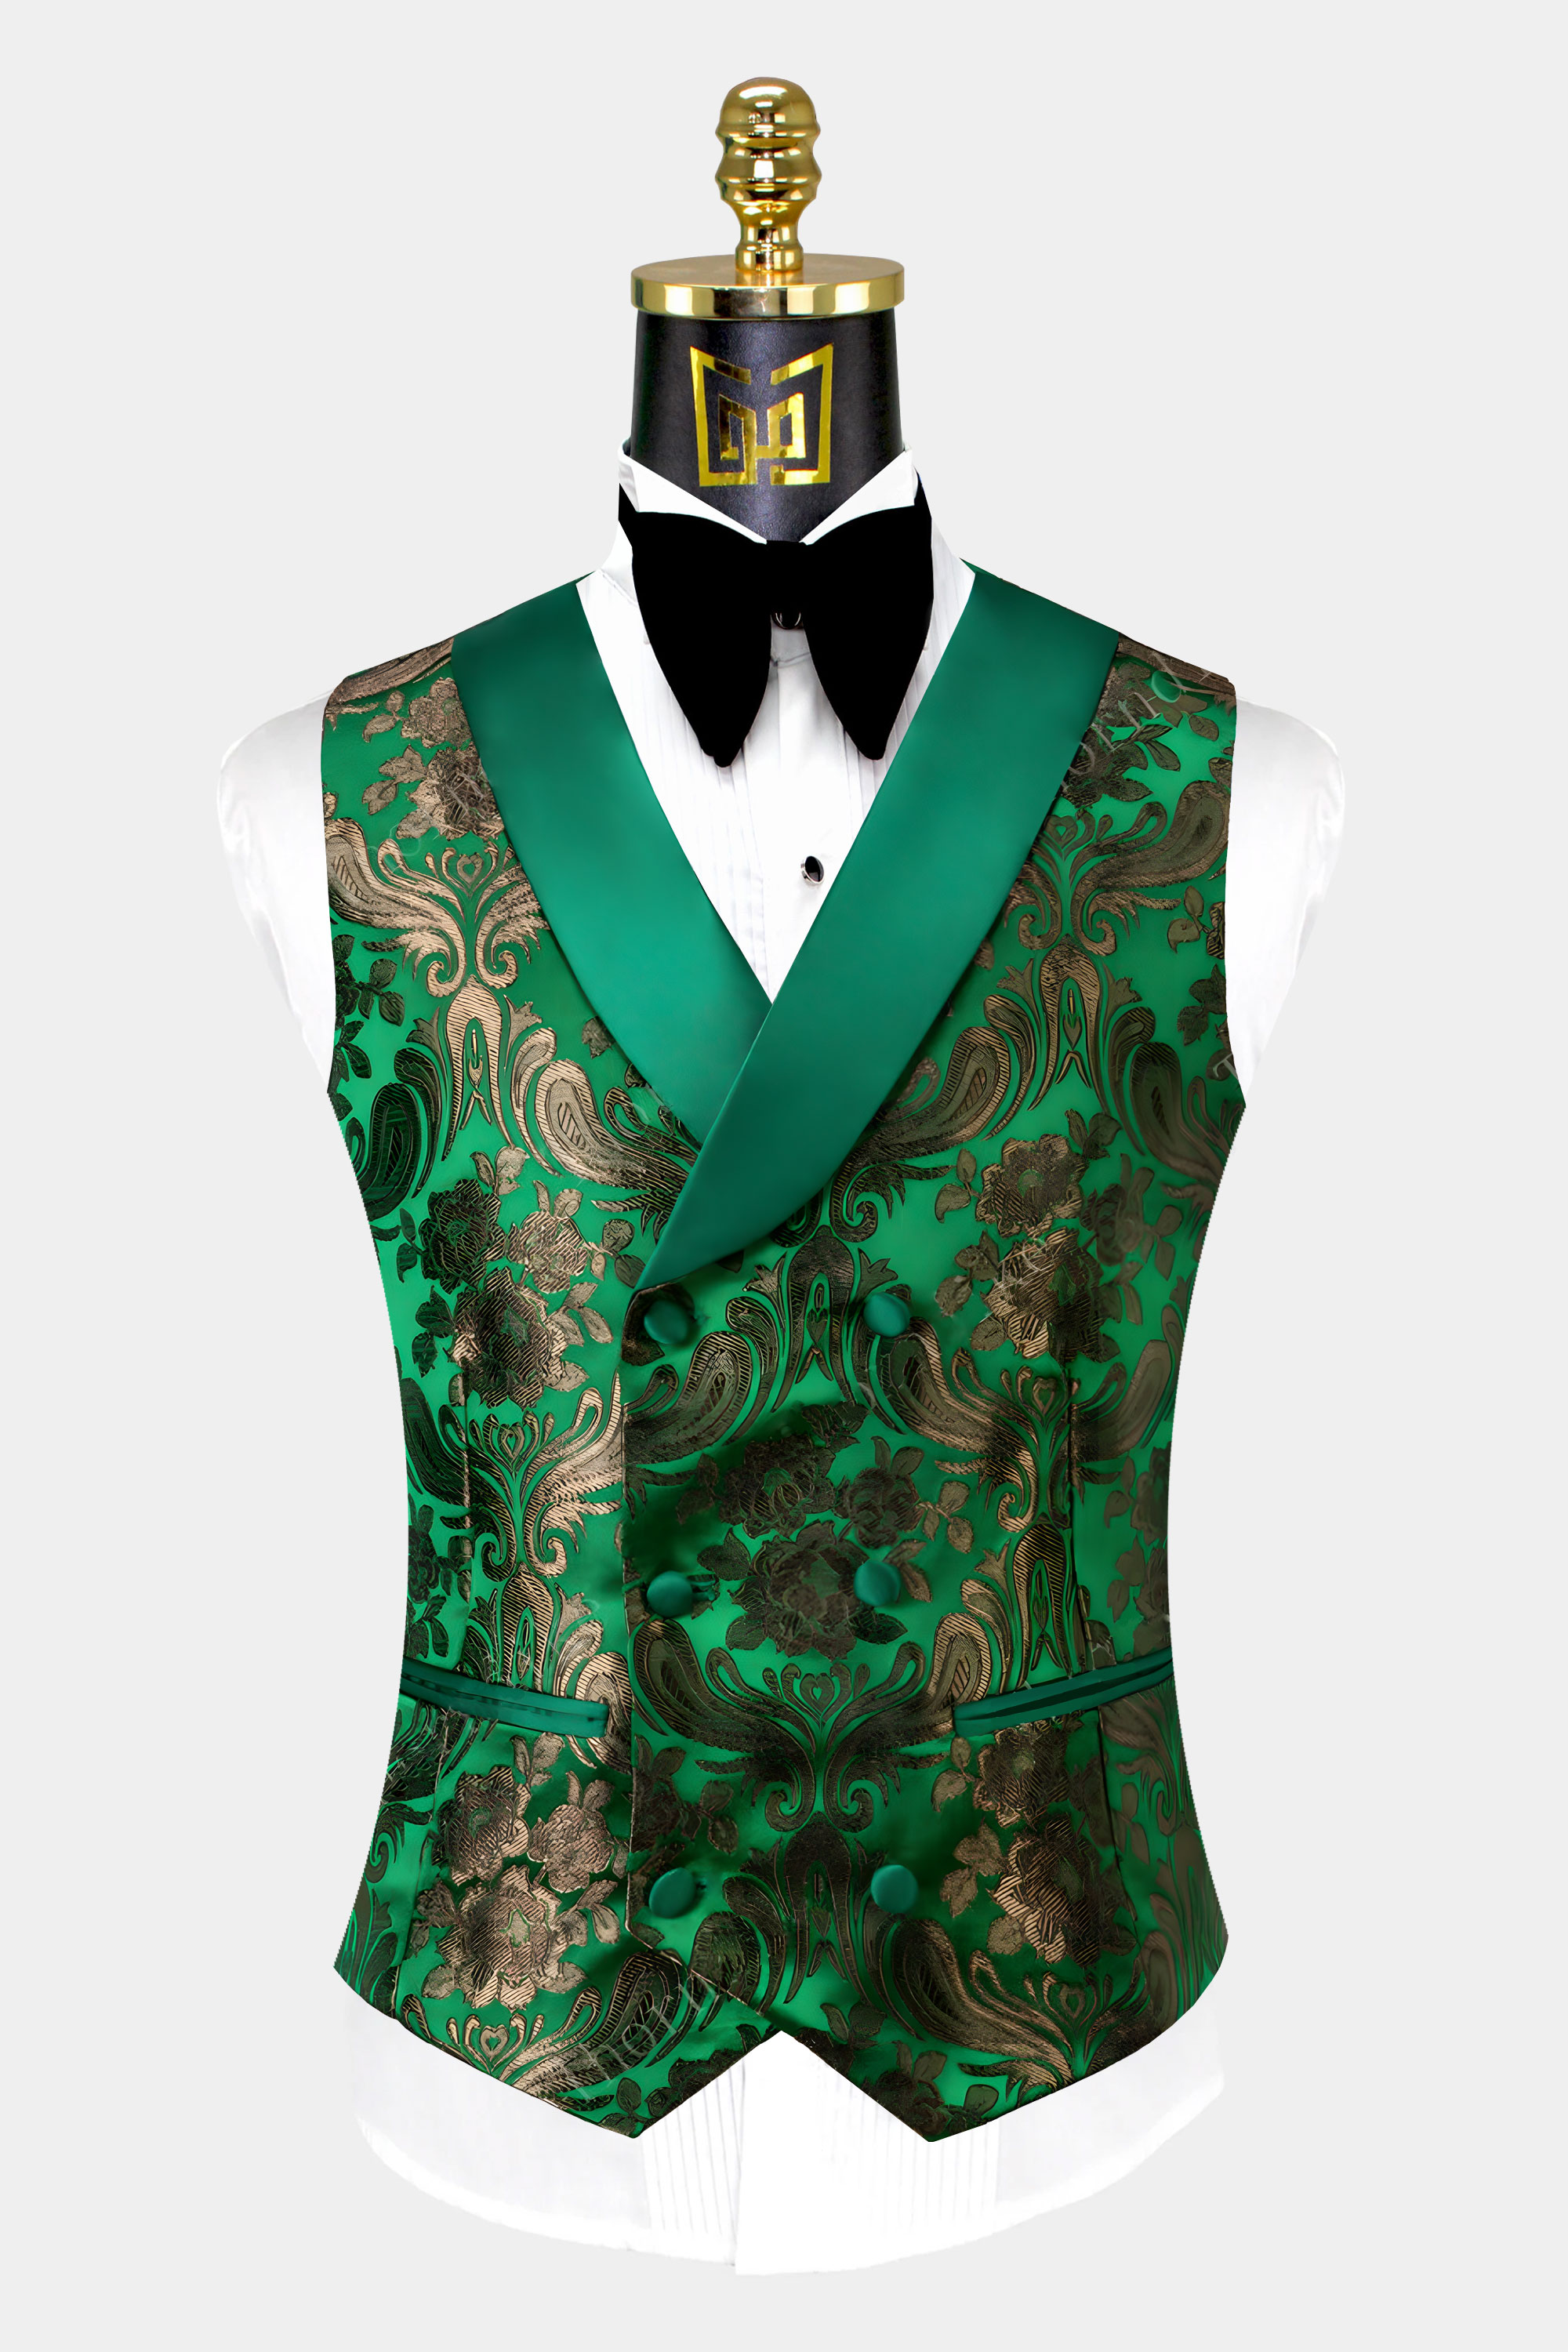 Green-Floral-Tuxedo-Vest-from-Gentlemansguru.com